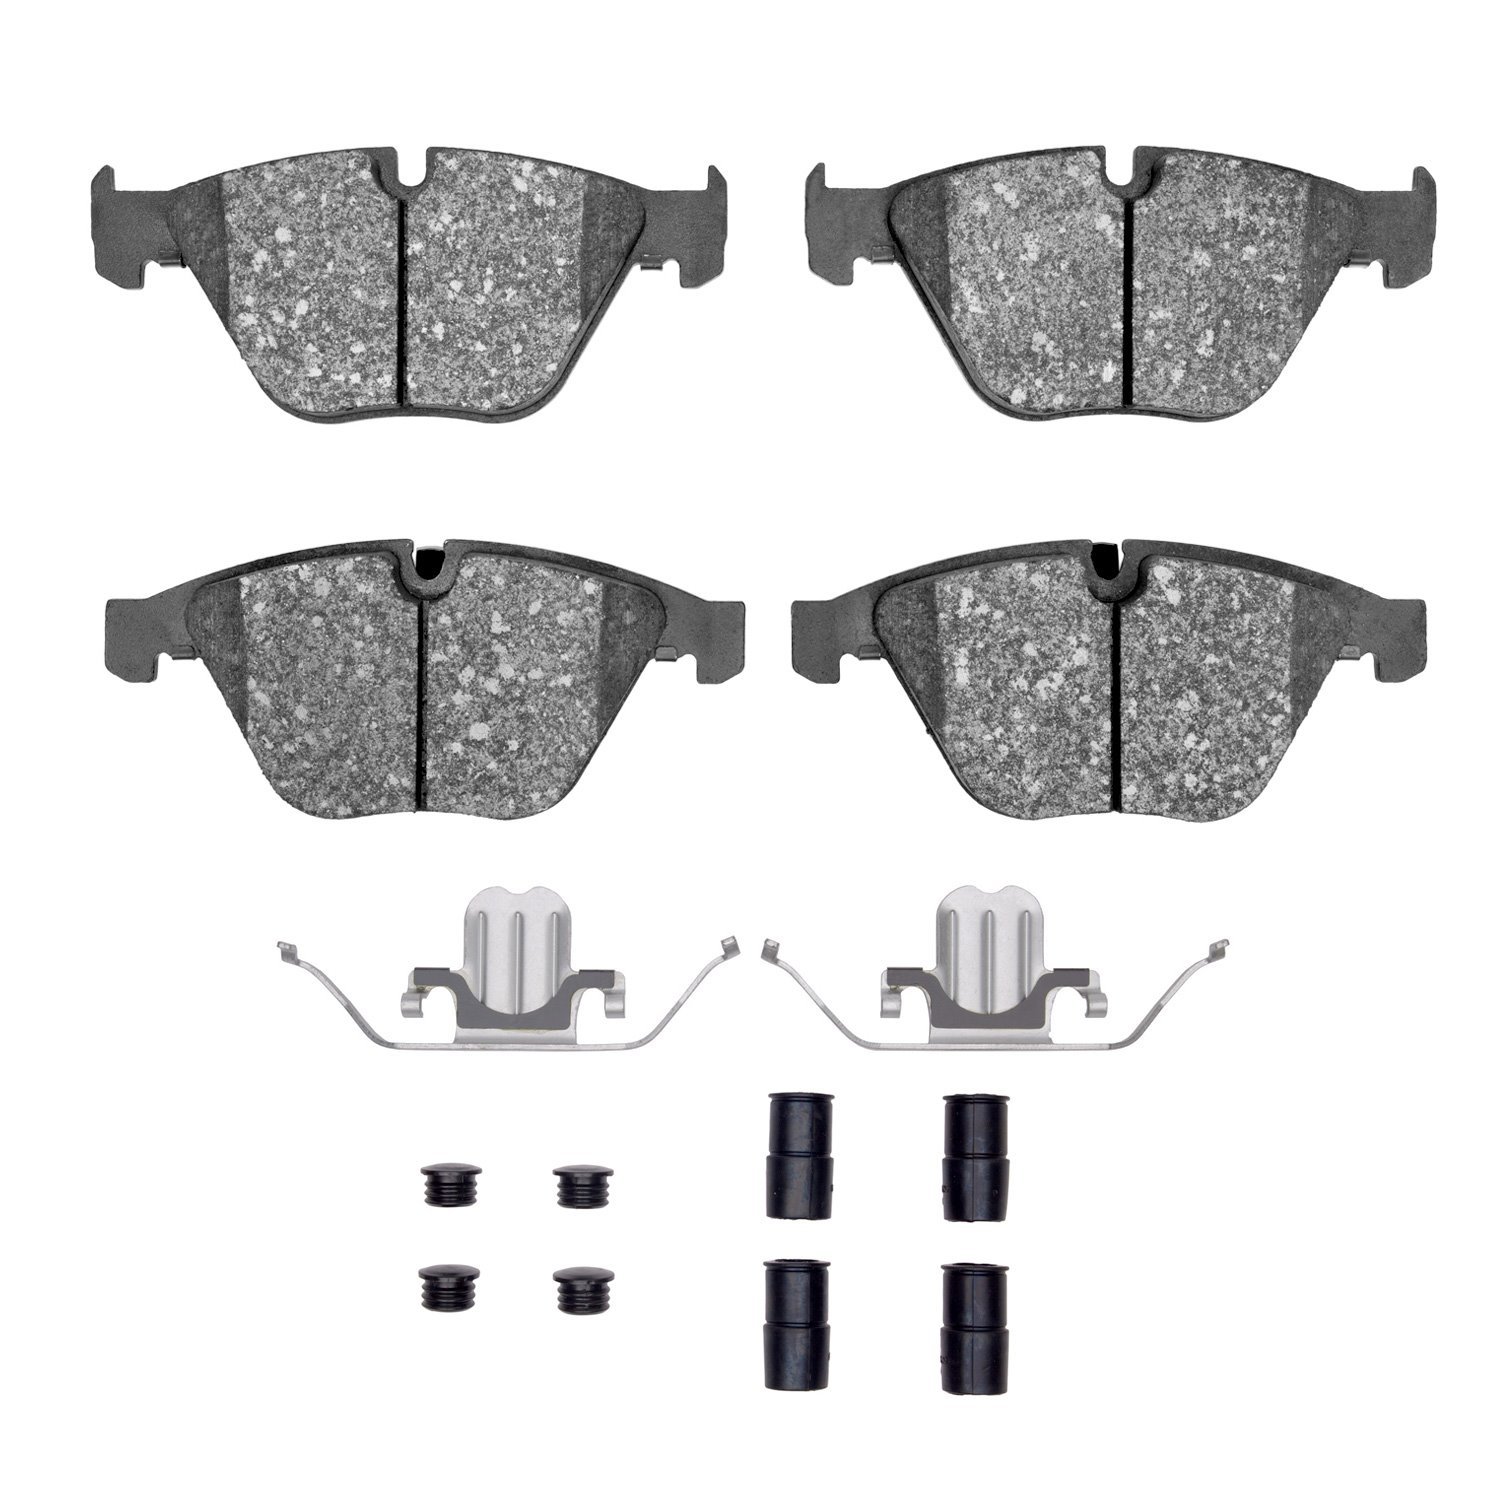 Ceramic Brake Pads & Hardware Kit, 2007-2015 BMW, Position: Front